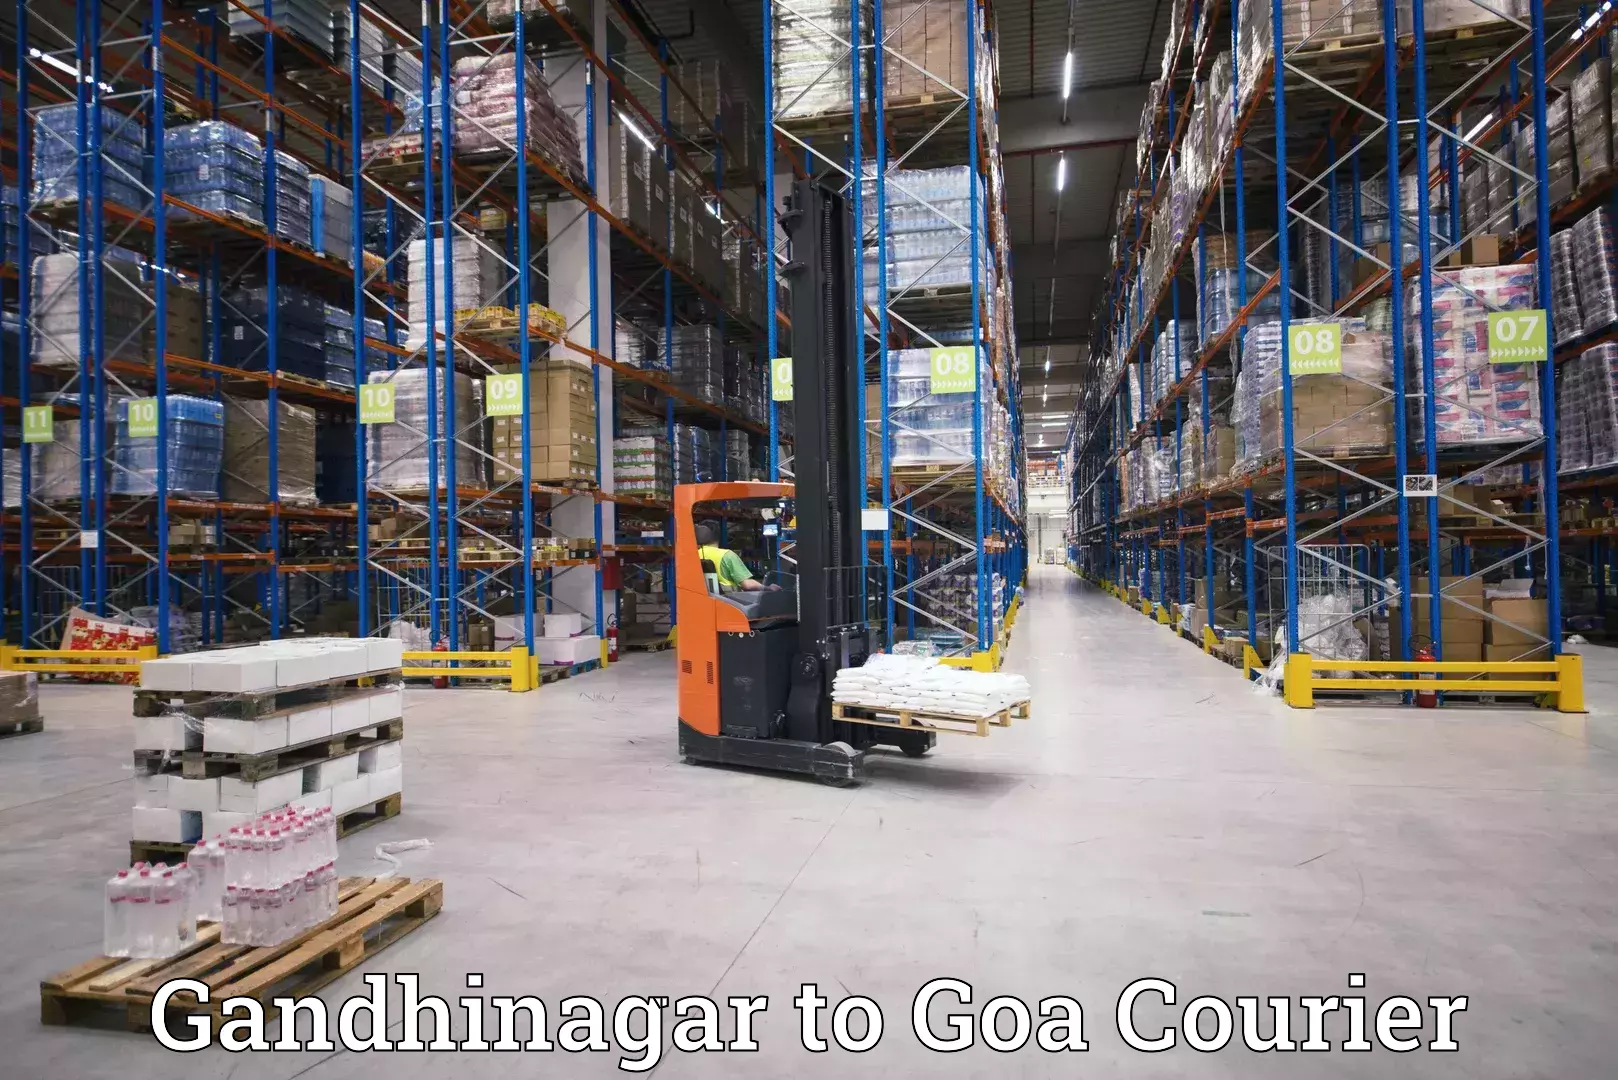 Overnight delivery services Gandhinagar to Mormugao Port